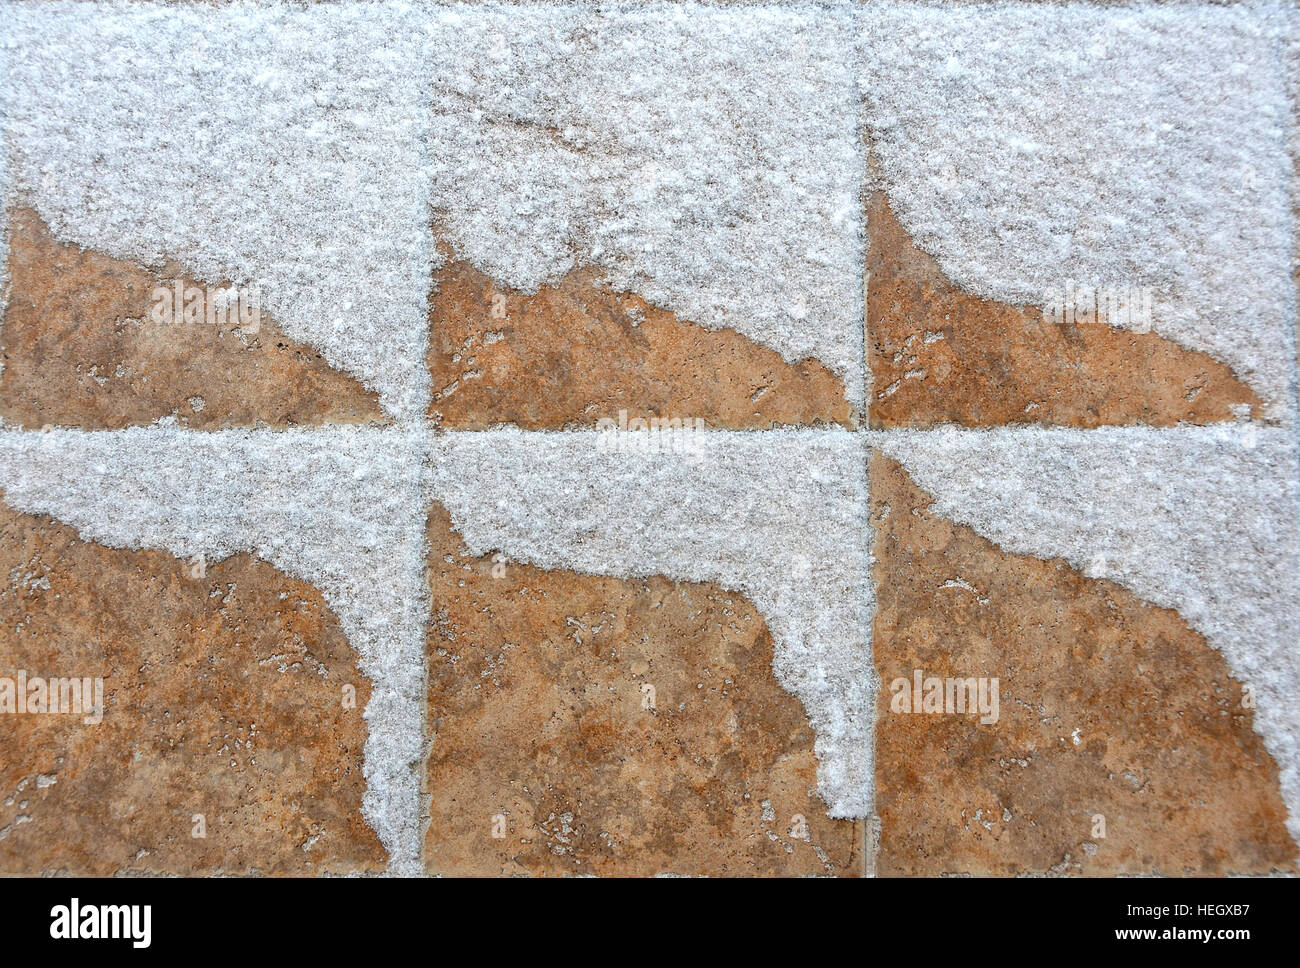 snowdrift pattern on stone tile Stock Photo